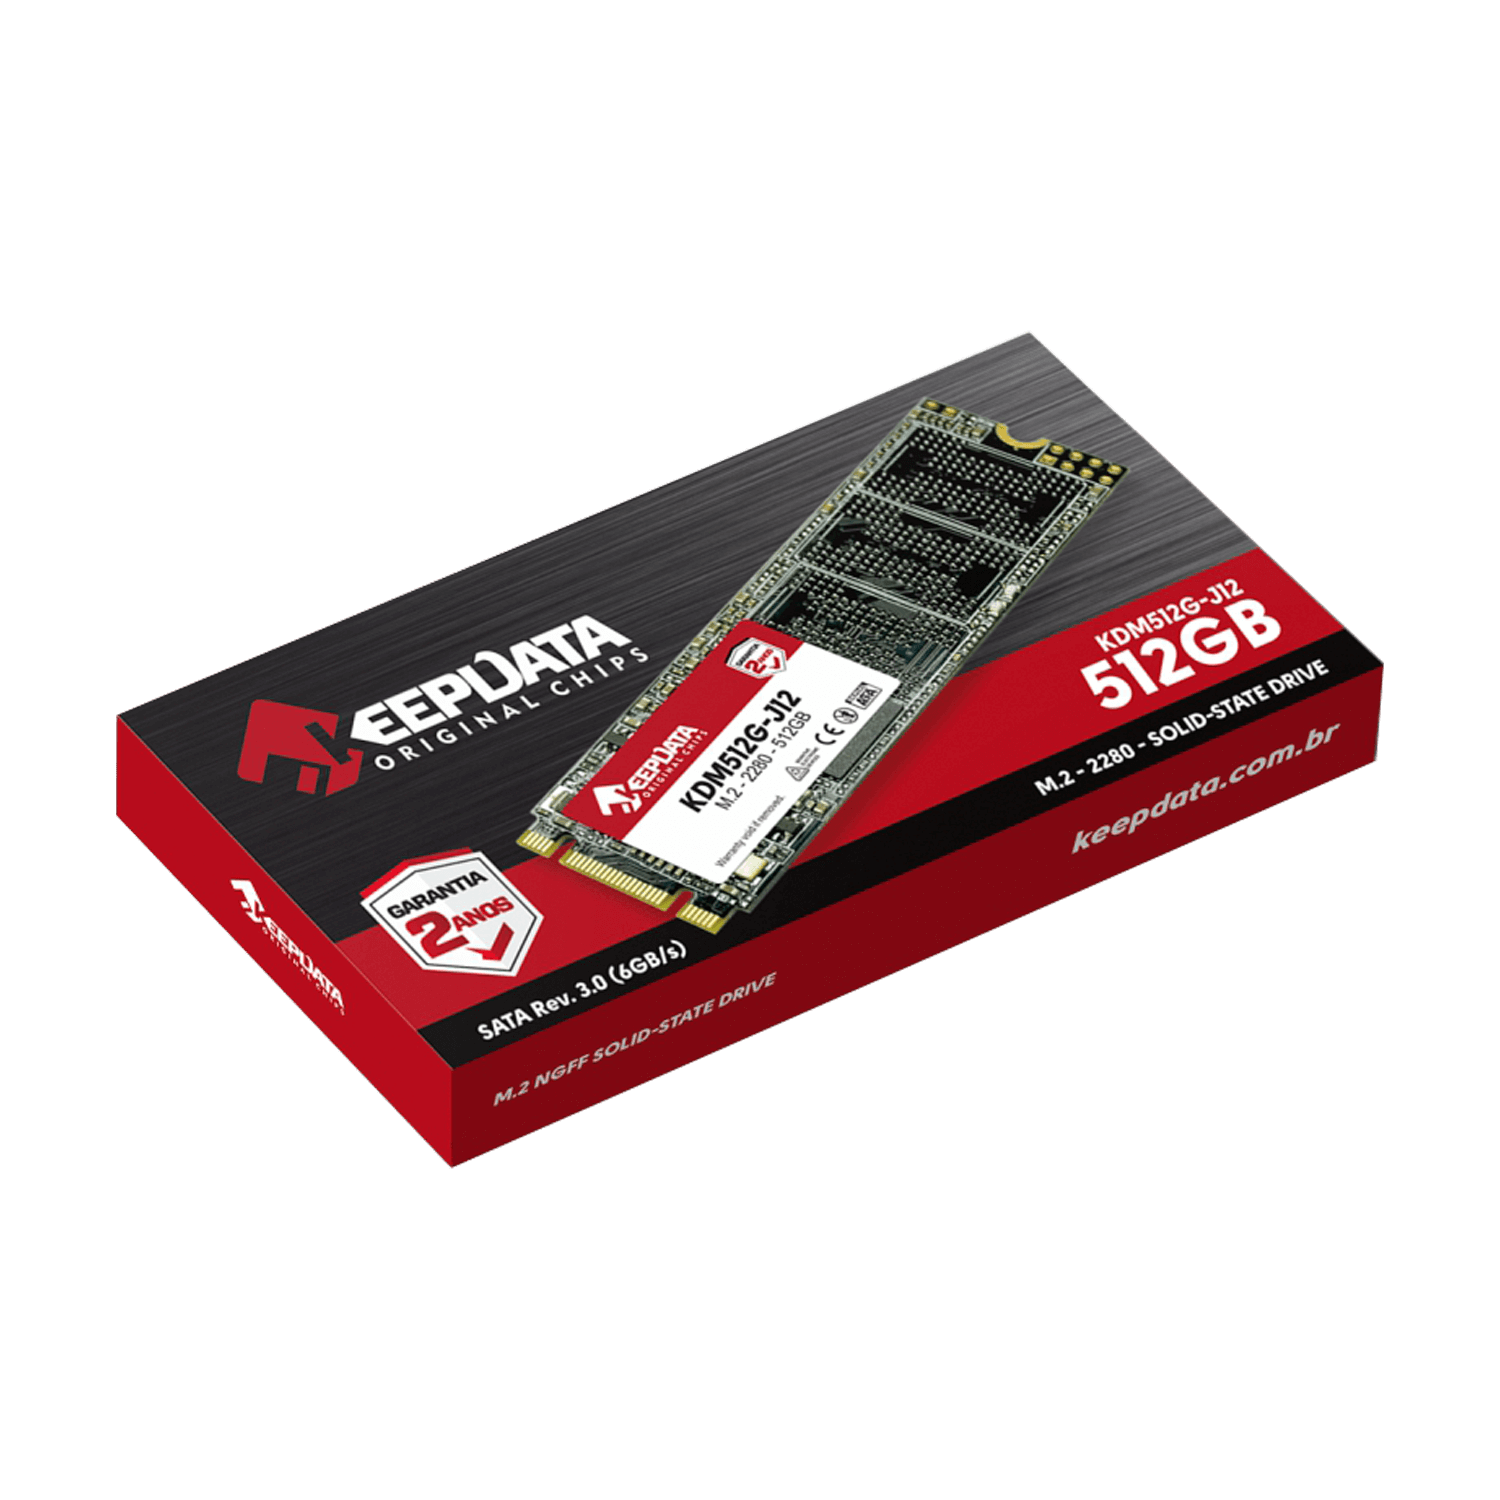 SSD M.2 Keepdata 512GB / 2280 / SATA 3 - (KDM512G-J12)